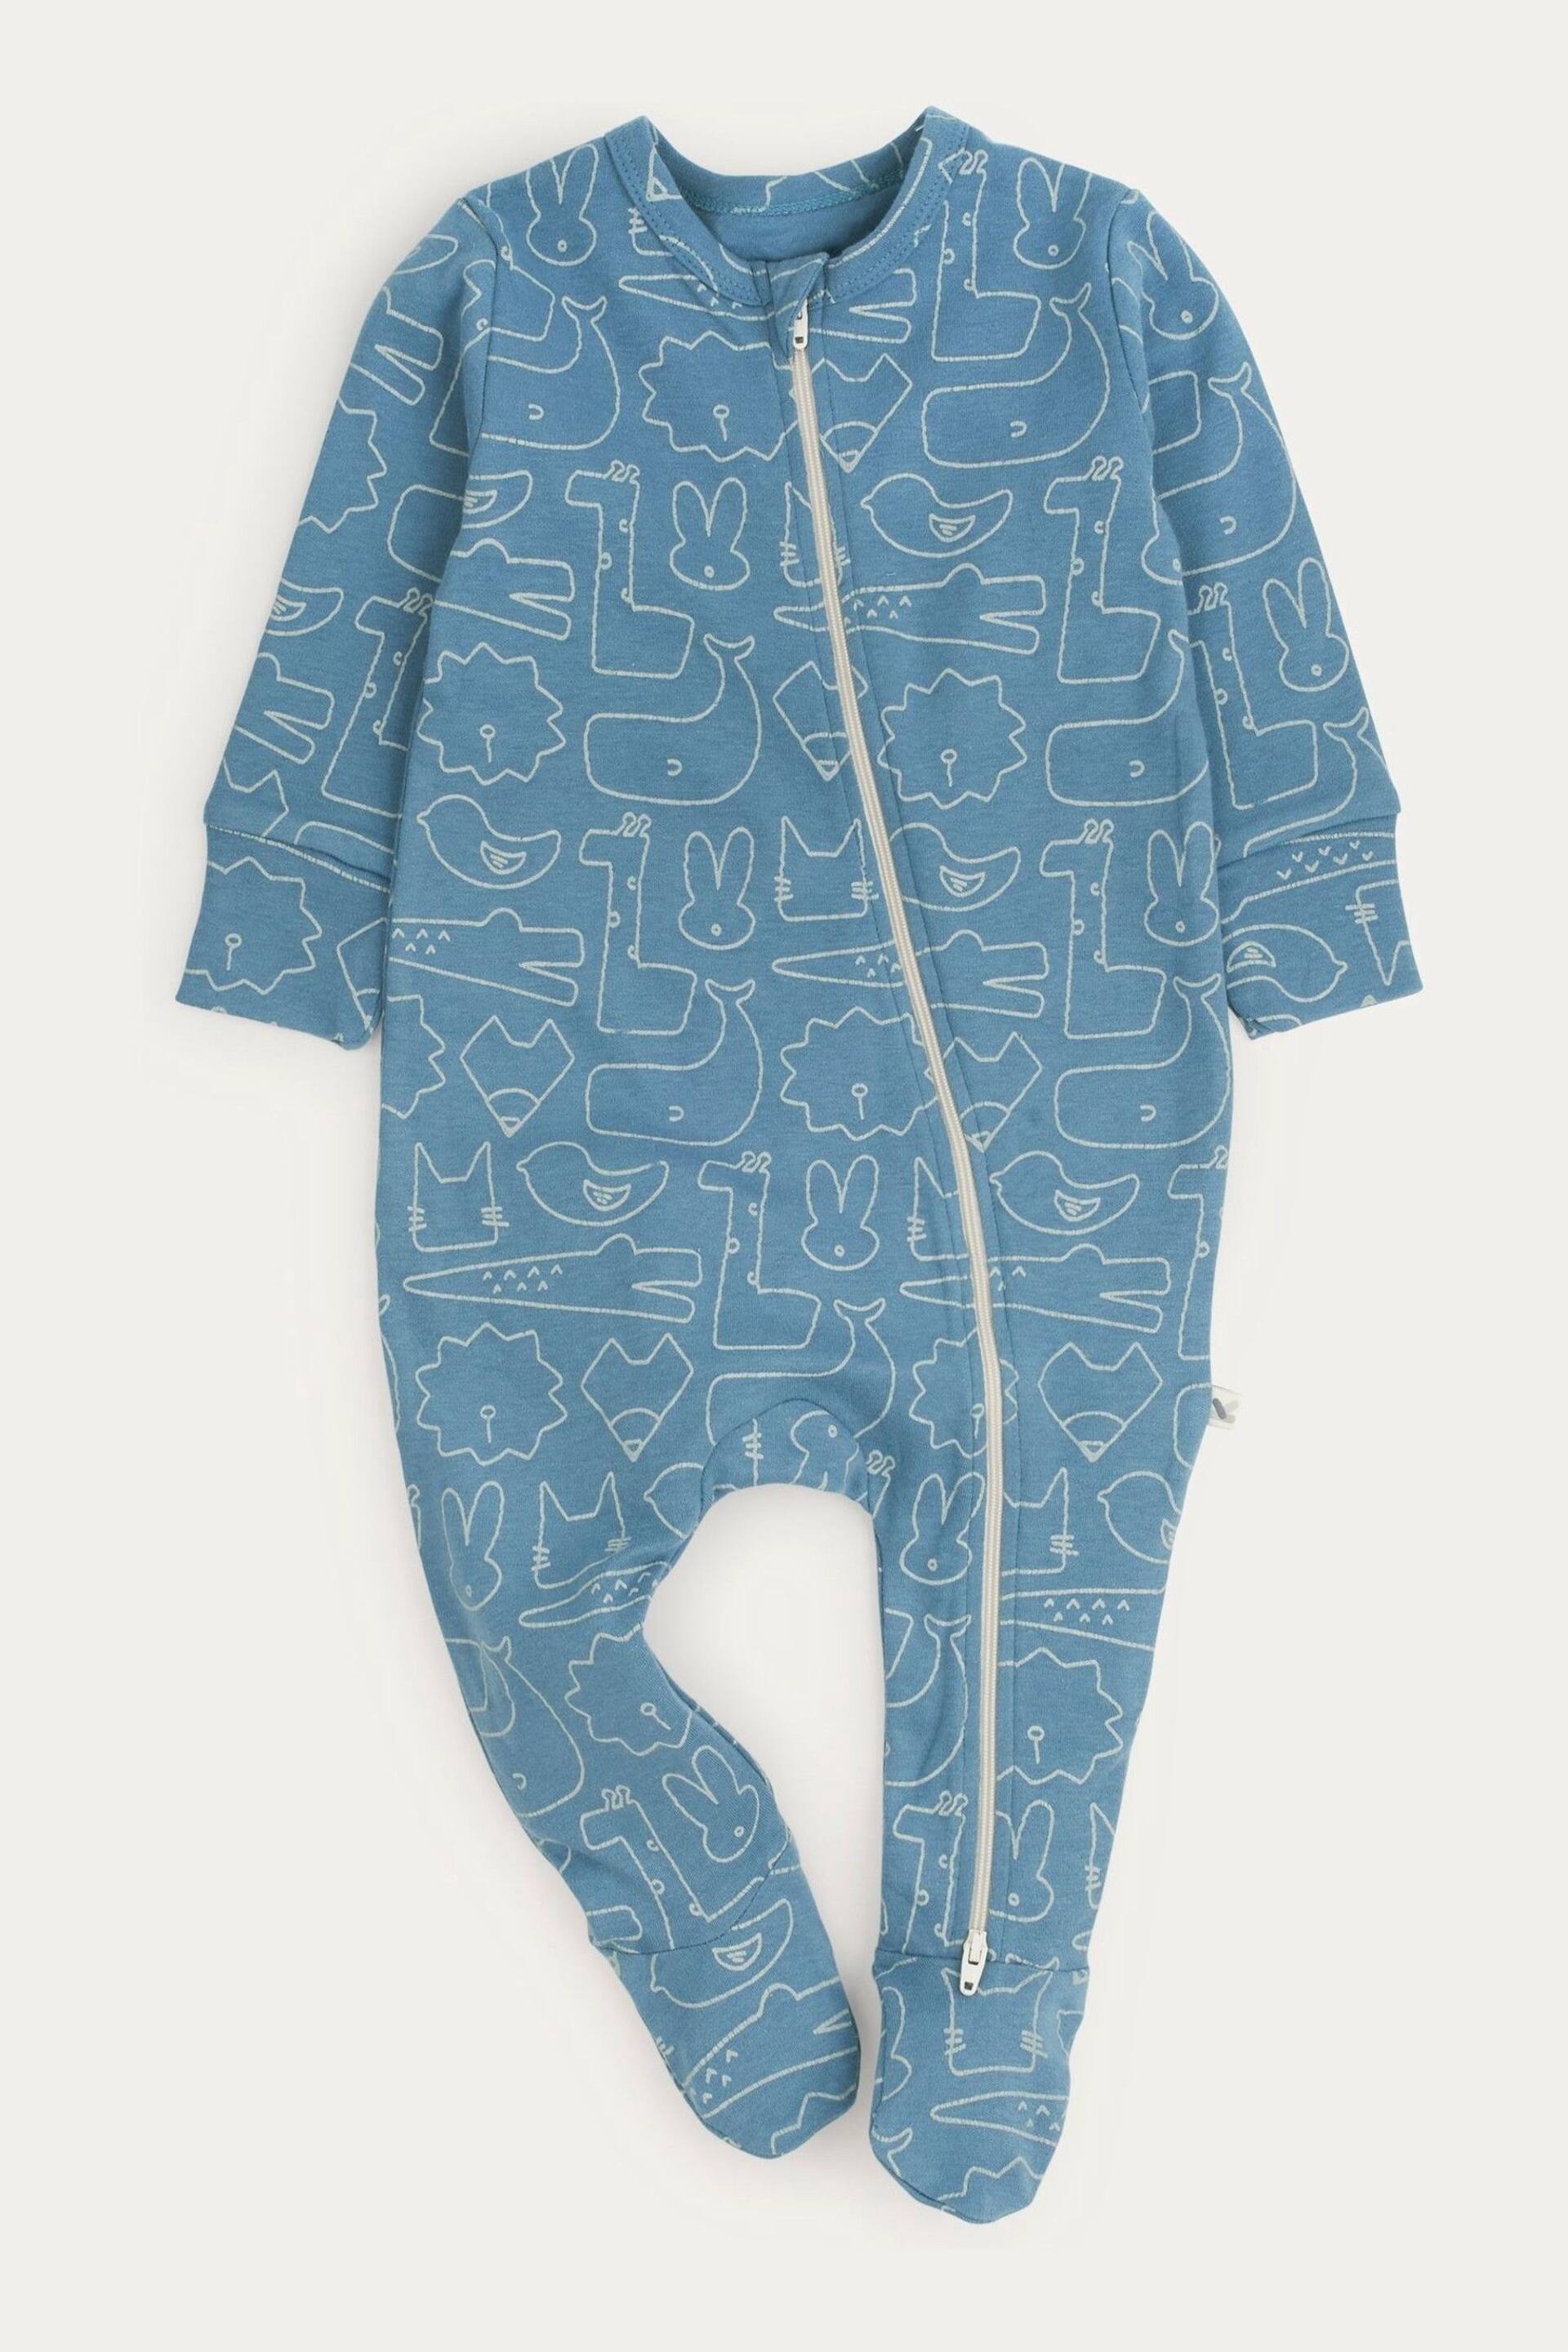 KIDLY Organic Zip Blue/Brown Sleepsuit - Image 1 of 5